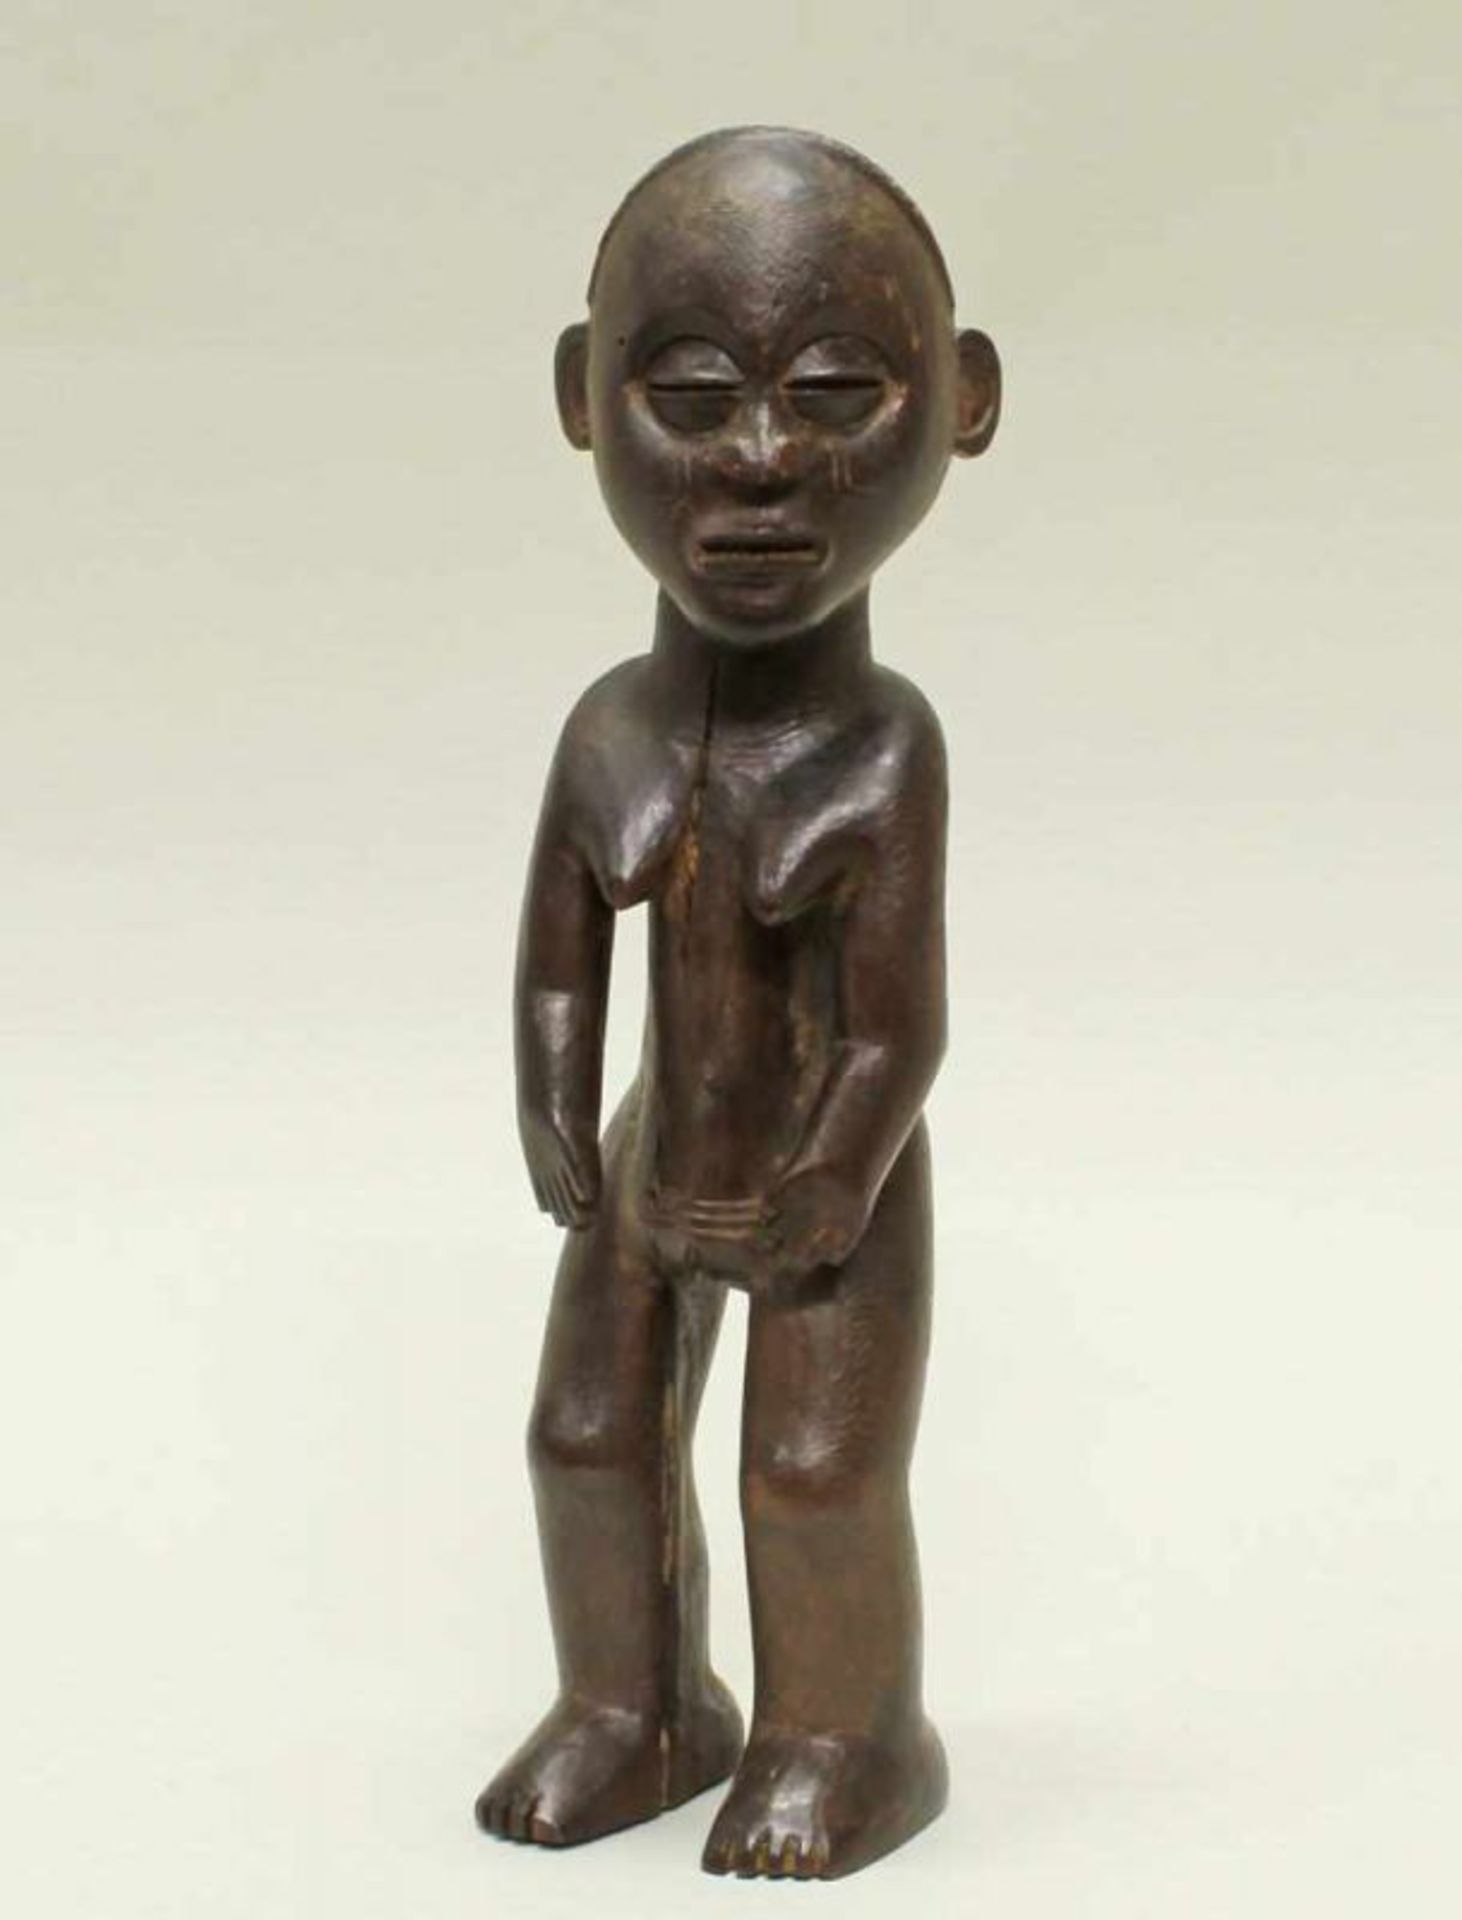 Figur, Chokwe, Zaïre, Afrika, authentisch, Holz, dunkle Patina, 35 cm hoch. Provenienz: